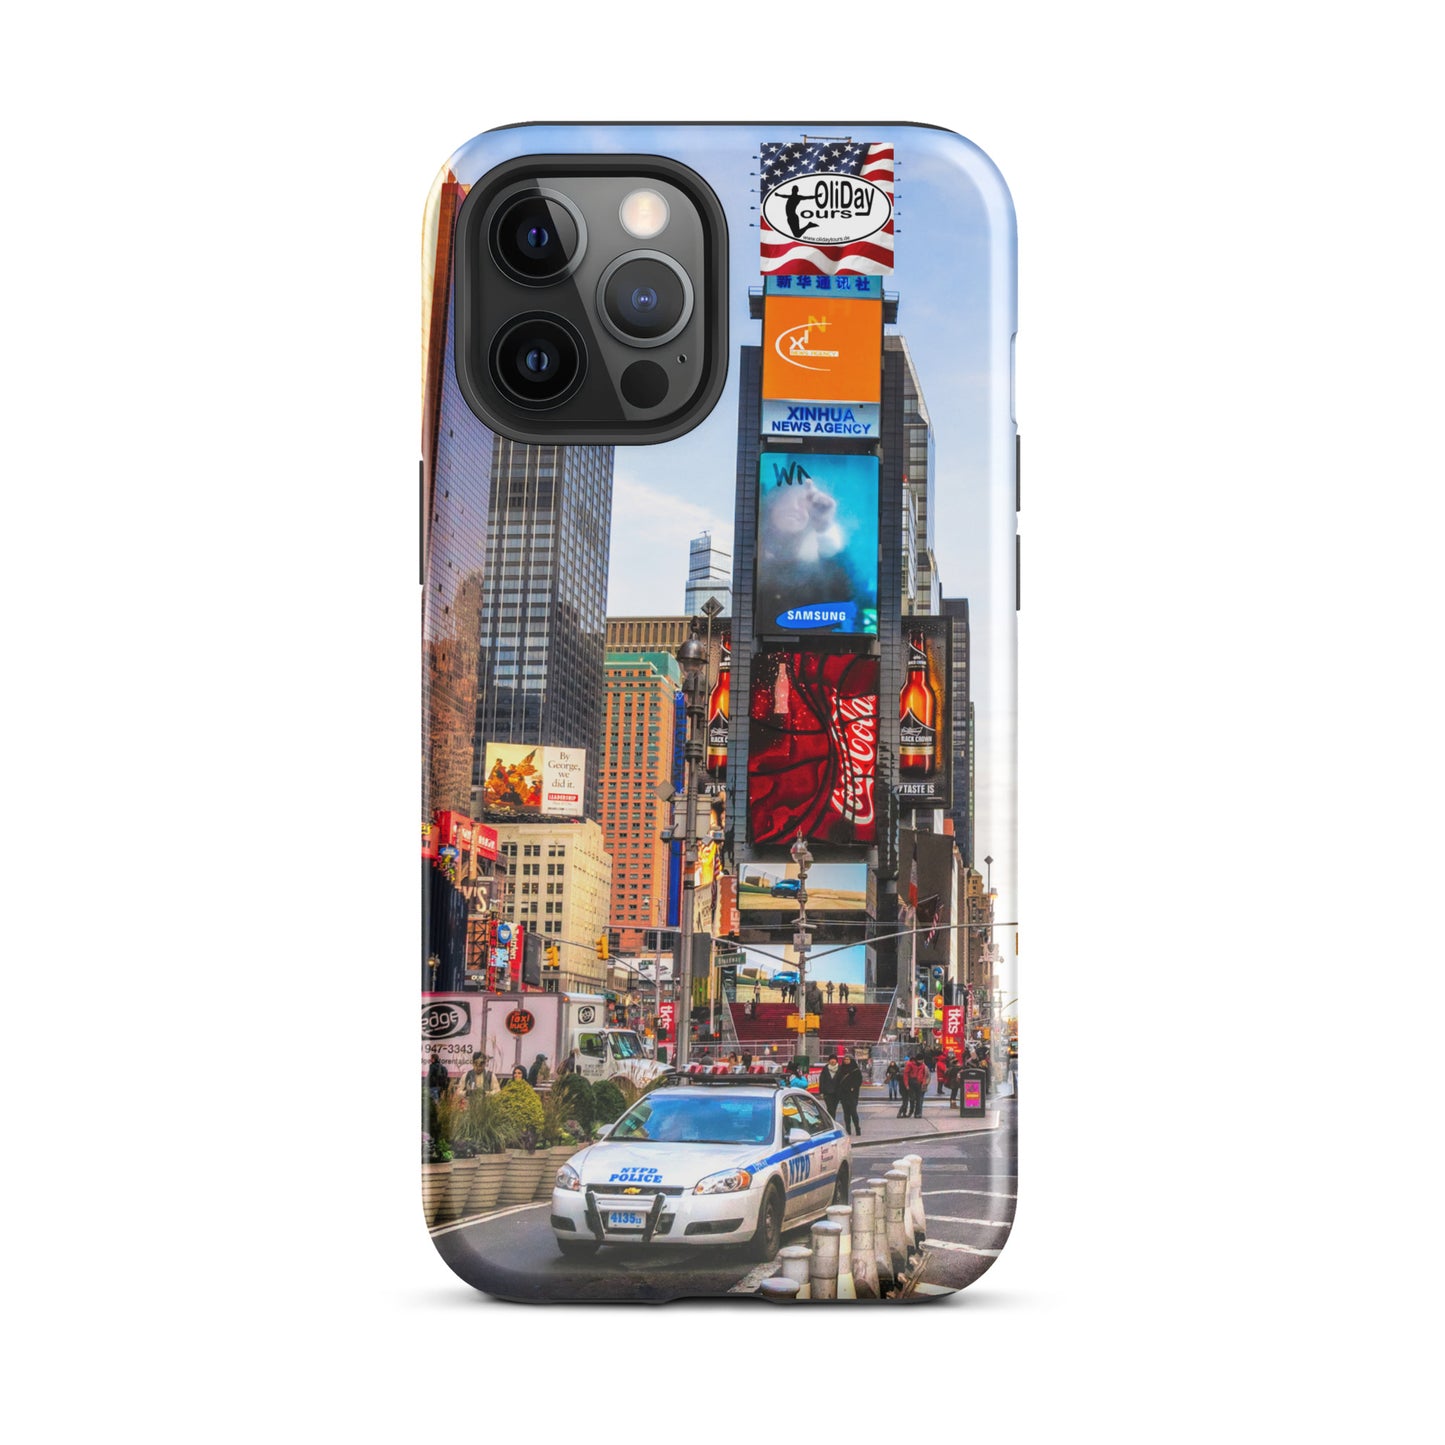 Olidaytours Police Times Square SuZie Hardcase iPhone® Handyhülle